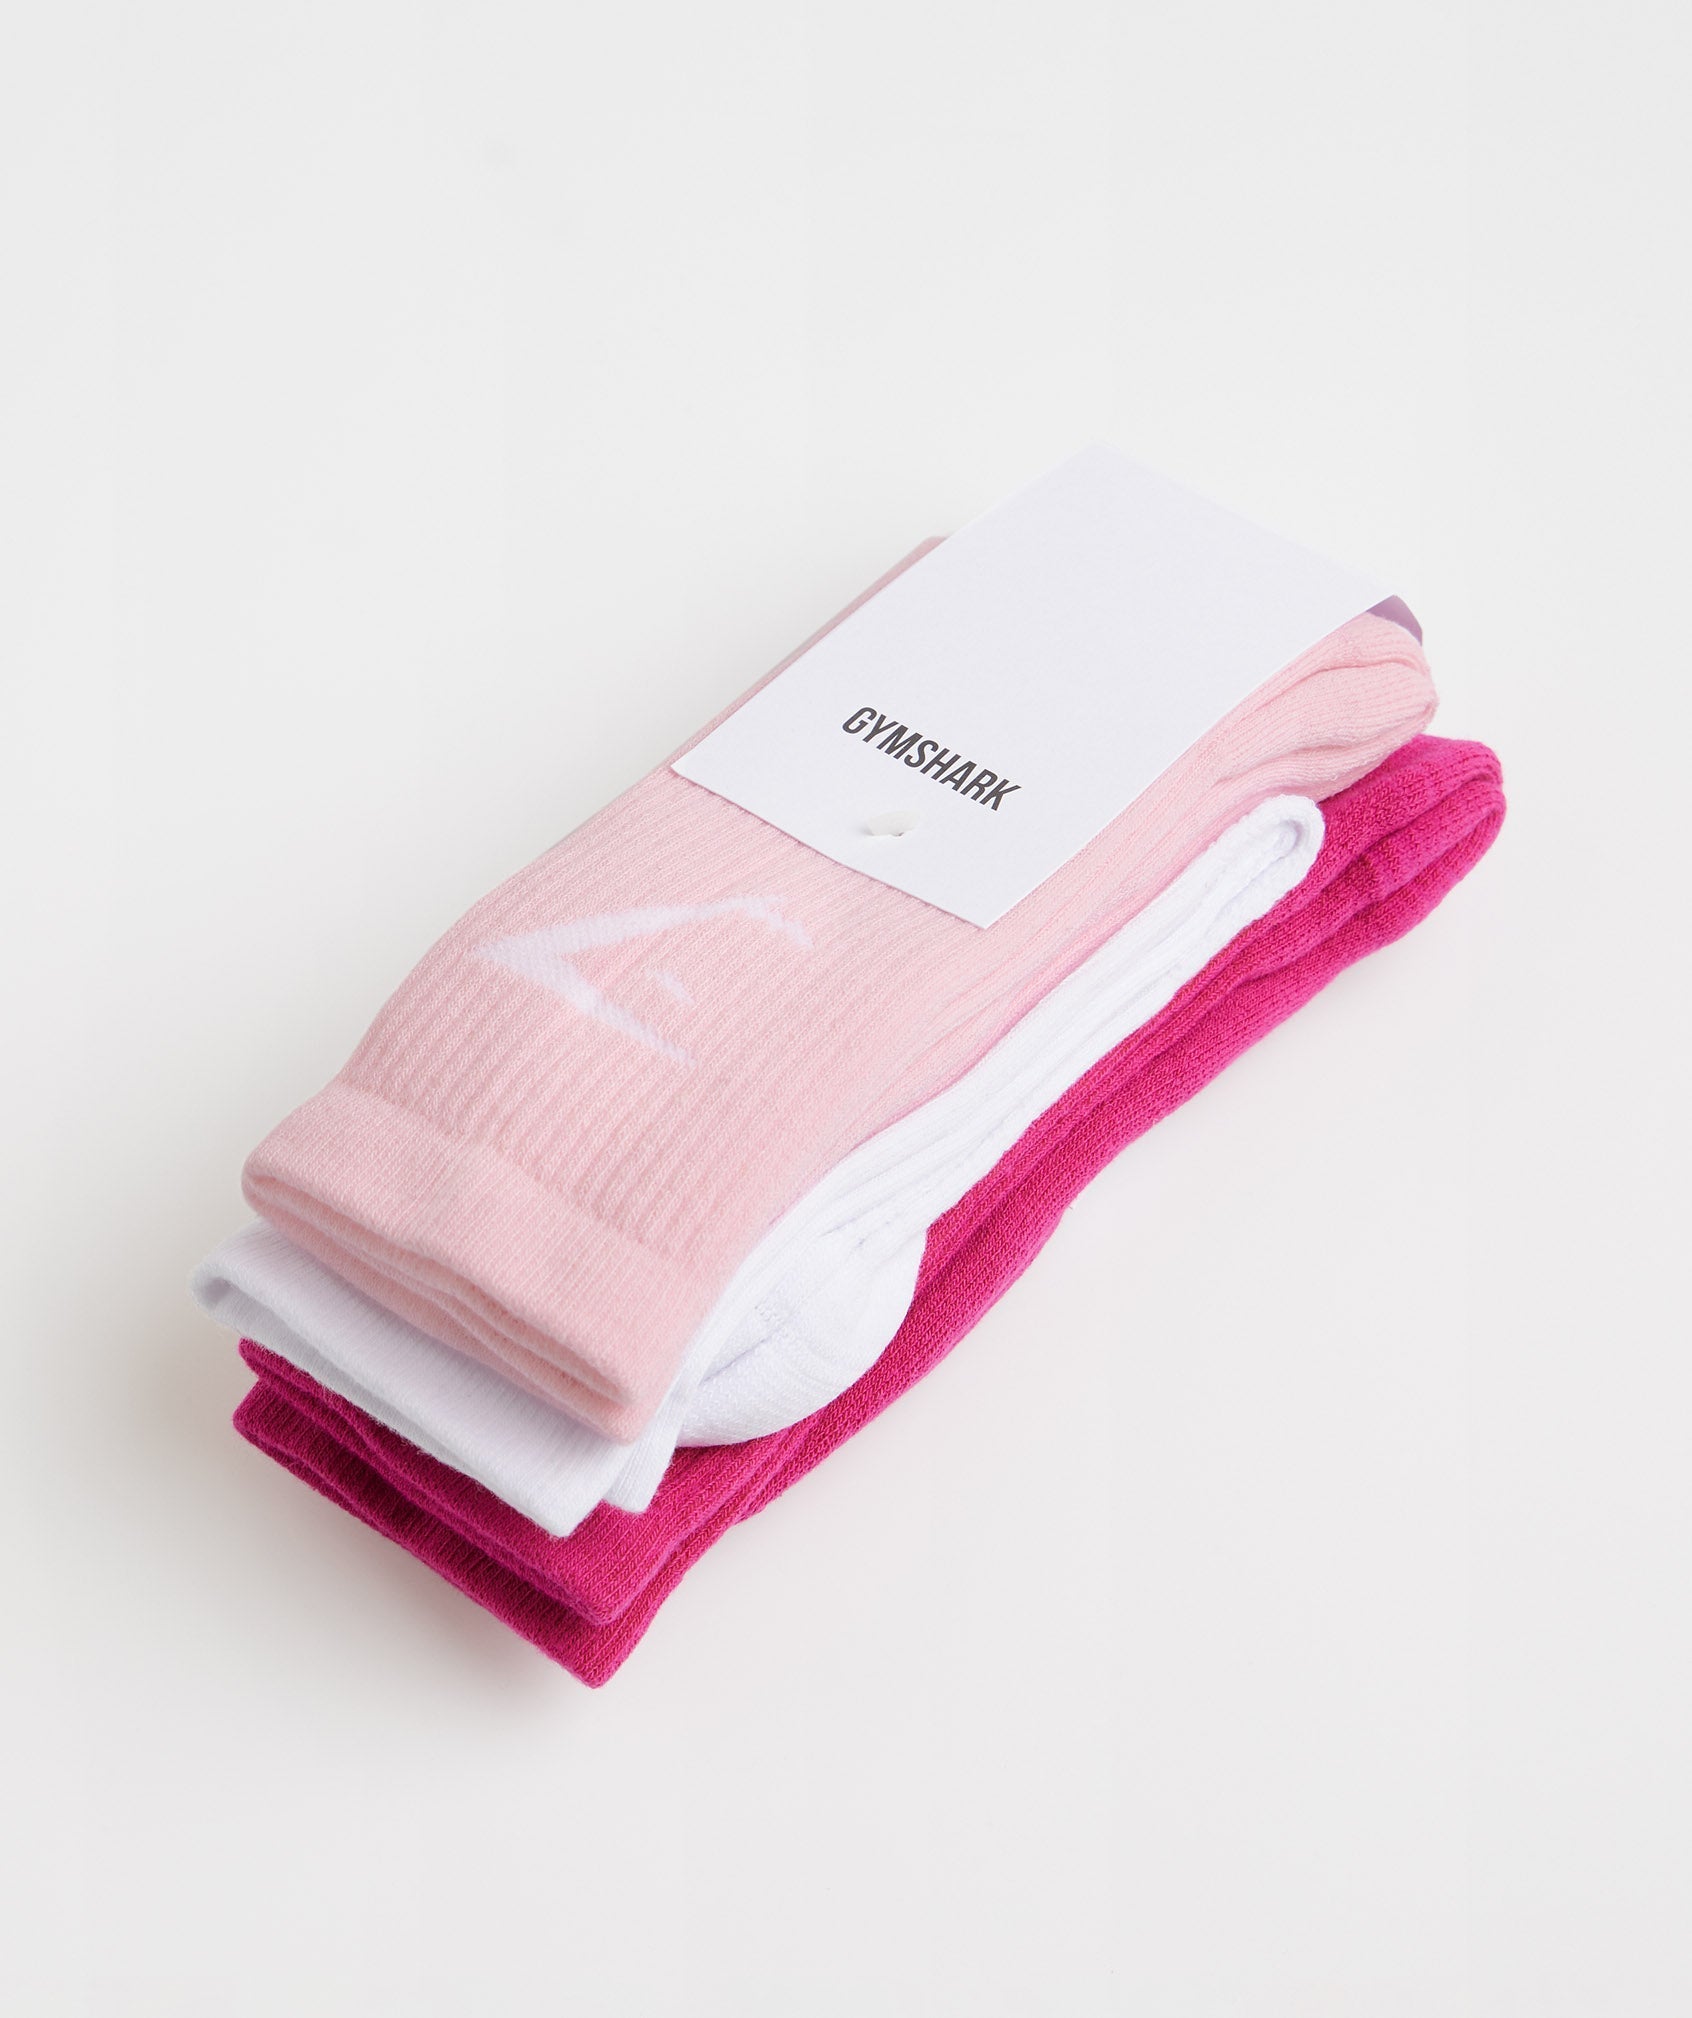 Crew Socks 3pk in Magenta Pink/White/Sweet Pink